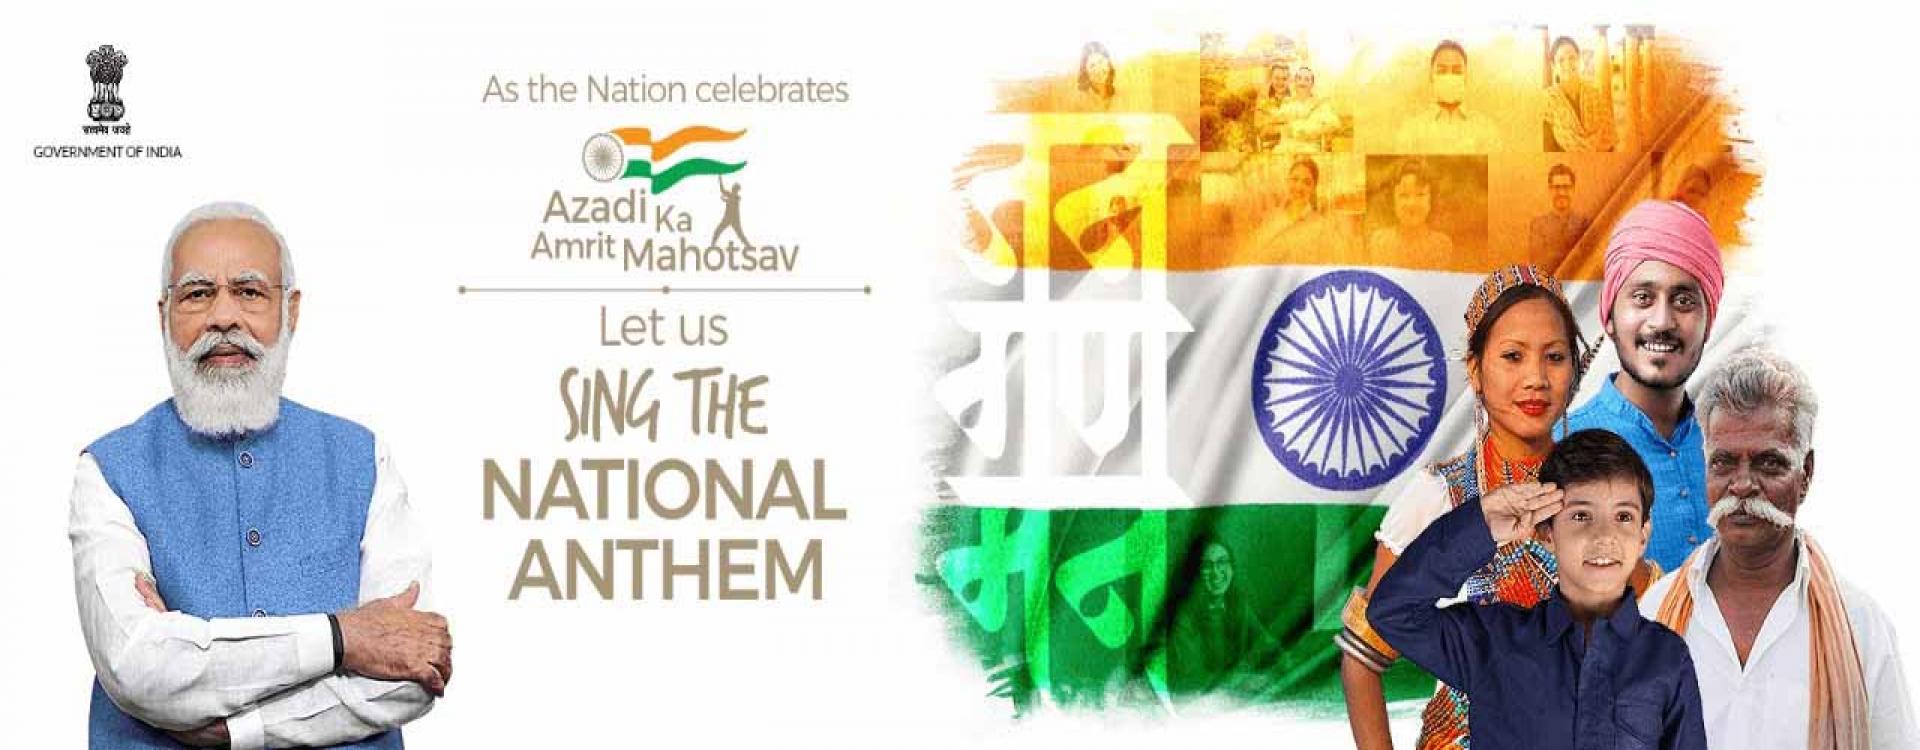 Azadi ka Amrut Mahotsav - India@75 - Independence Day